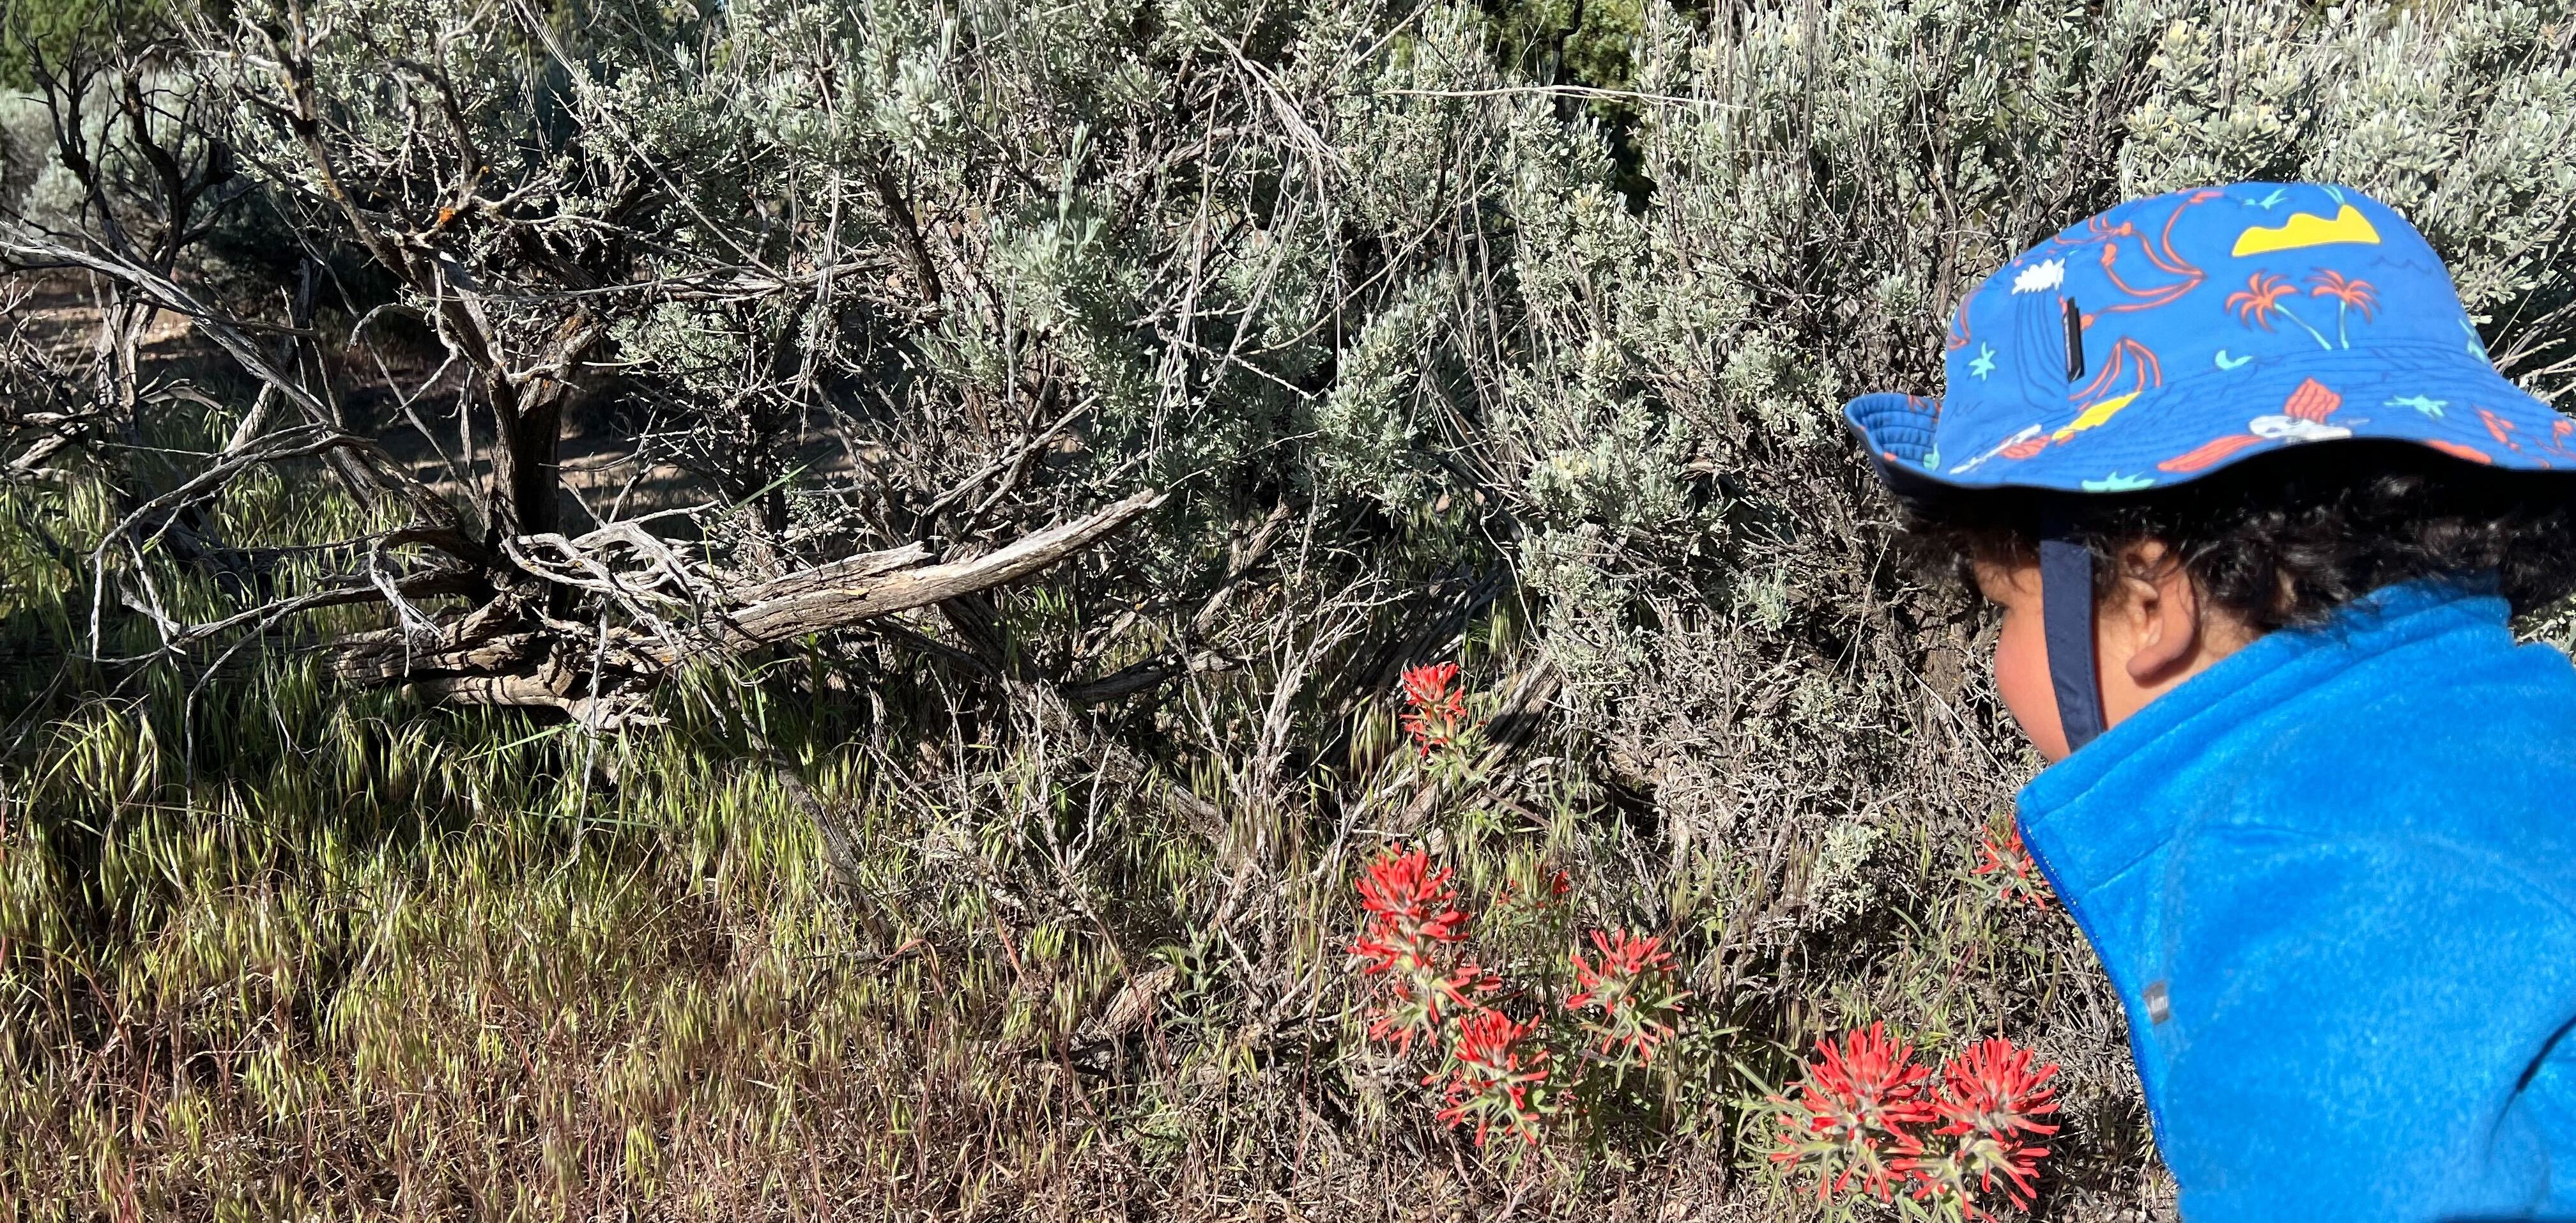 Leo inspecting desert paintbrush, <i>Castilleja chromosa</i>, which is parasitizing Great Basin sagebrush, <i>Artemisia tridentata</i>